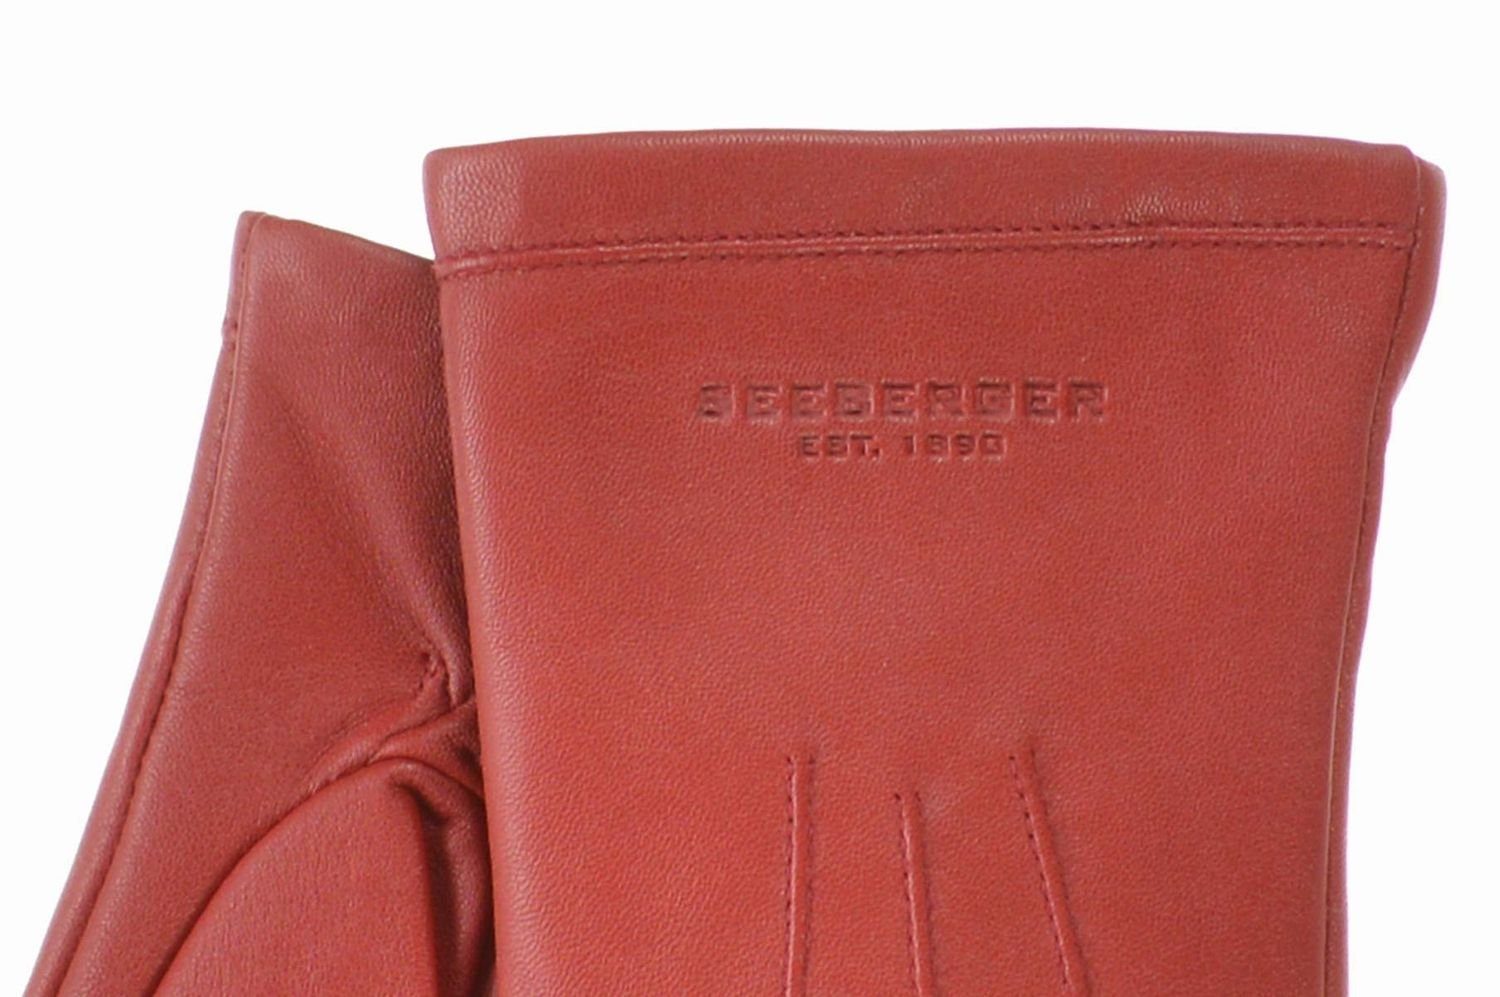 Seeberger Lederhandschuhe warm rubin Woll-Kaschmir-Futter Glattleder 0021 mit